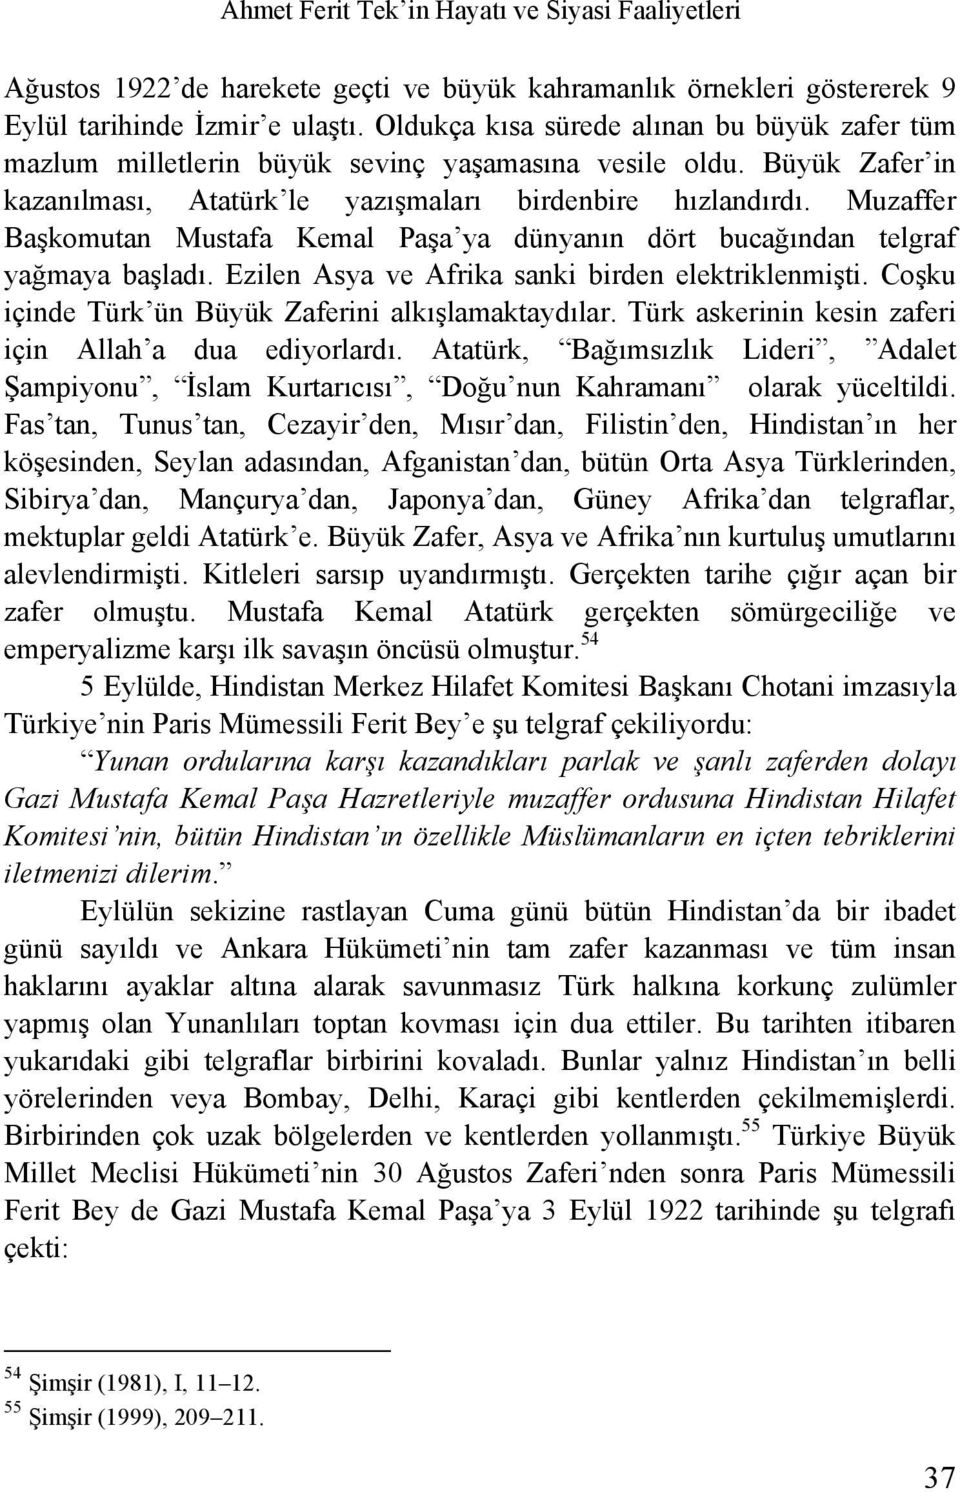 Muzaffer Başkomutan Mustafa Kemal Paşa ya dünyanın dört bucağından telgraf yağmaya başladı. Ezilen Asya ve Afrika sanki birden elektriklenmişti. Coşku içinde Türk ün Büyük Zaferini alkışlamaktaydılar.